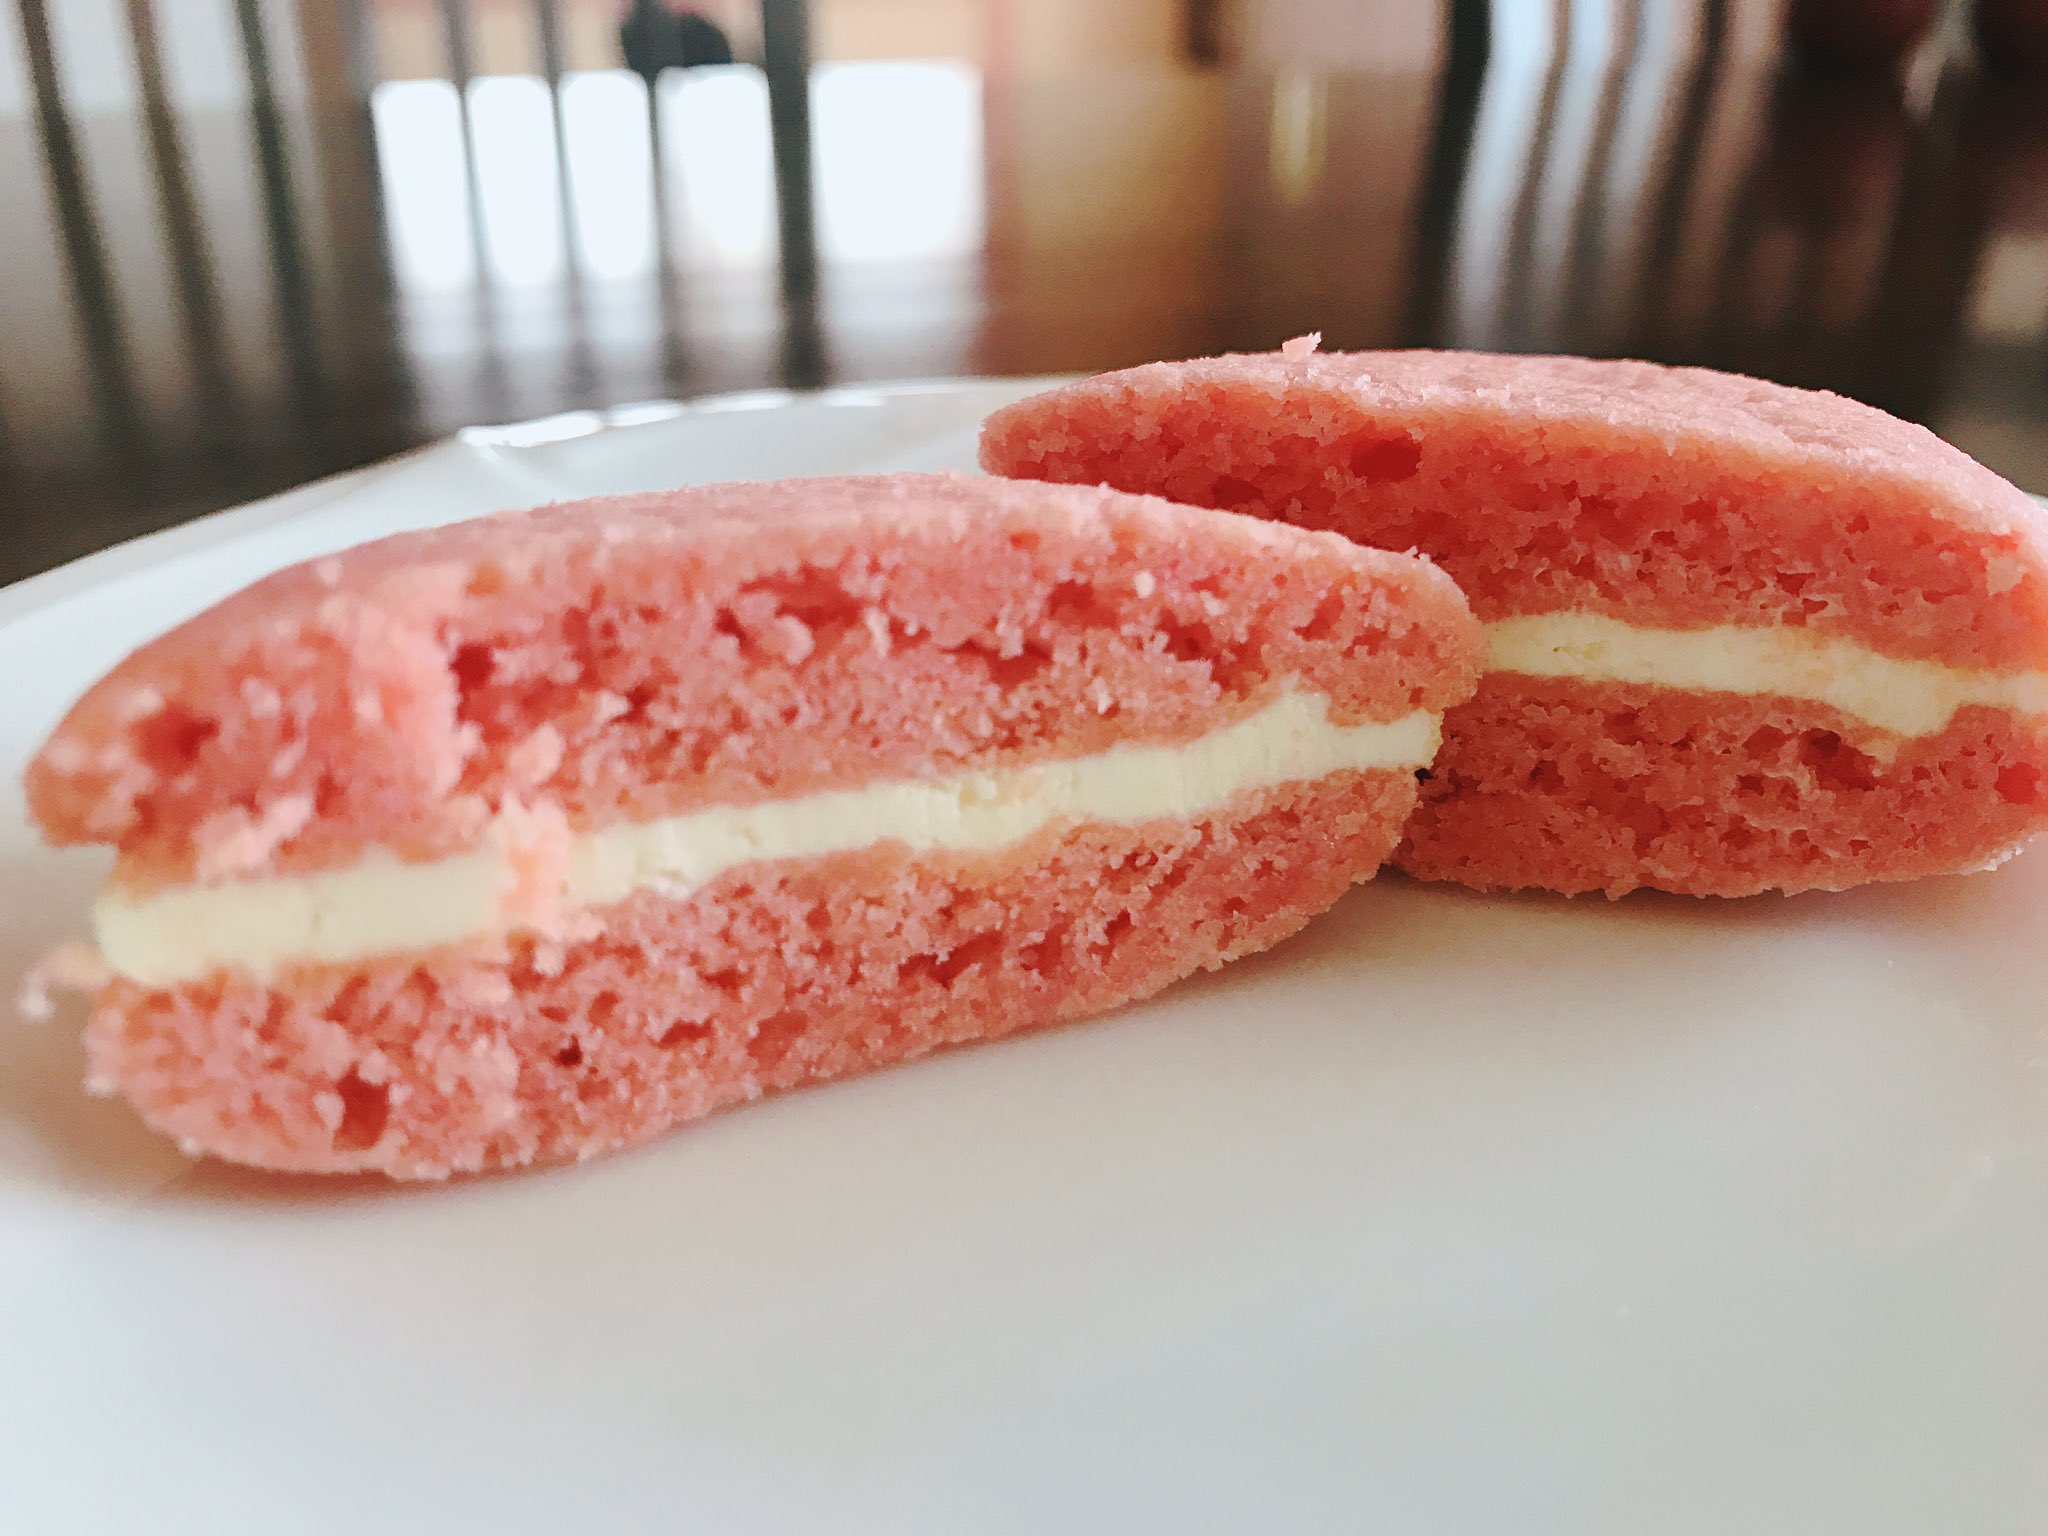 Misaki お菓子作り バタークリーム消費のために ソフトクッキーを作って 挟んでみました 食紅 のリベンジも兼ねてクッキーは ピンク色にしてみました 綺麗な色が出たし 味も美味しかった T Co g4naymyh Twitter